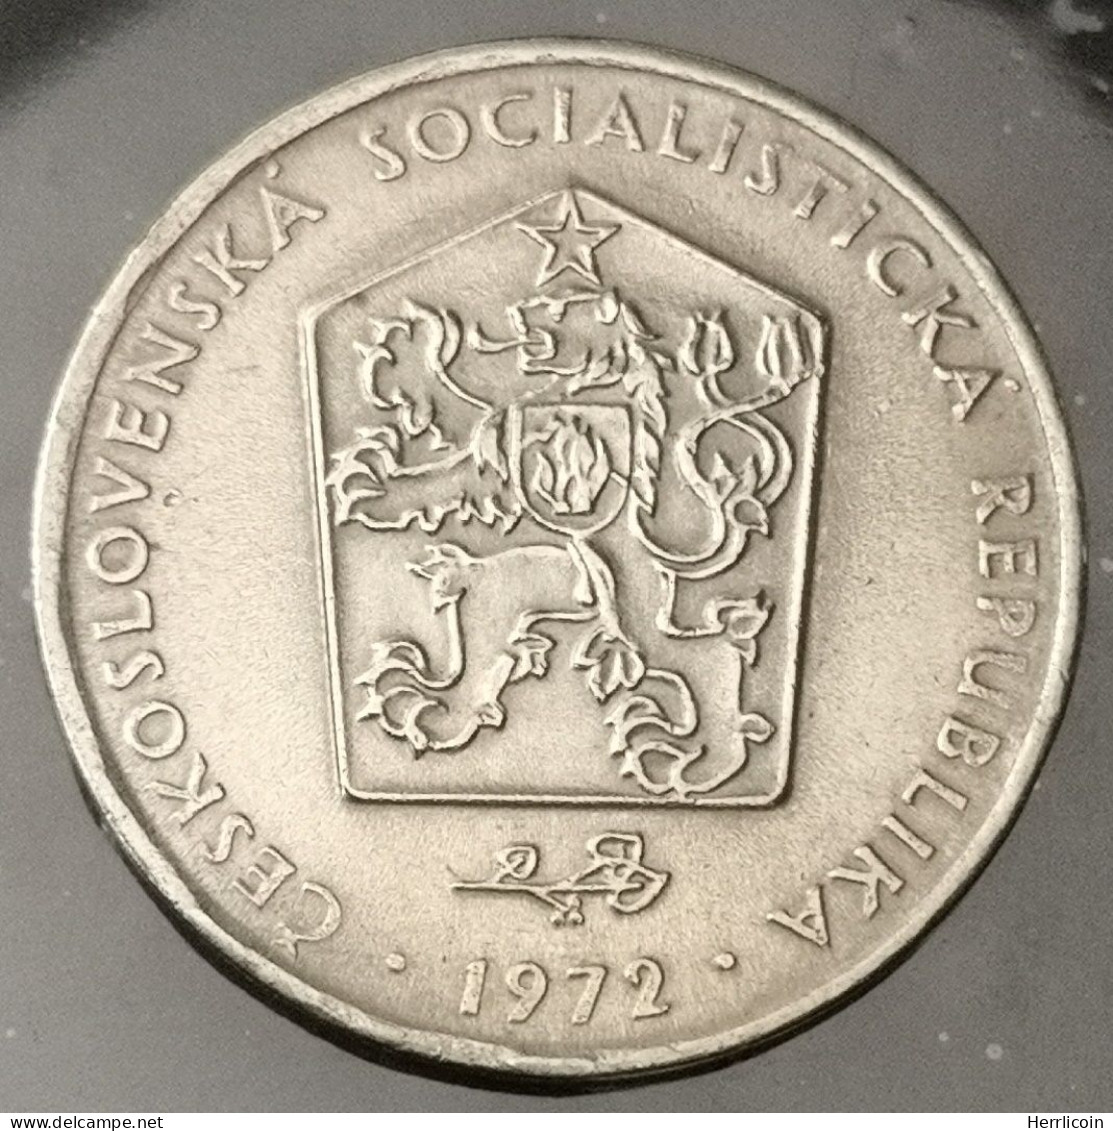 Monnaie Slovaquie - 1972 - 2 Koruny - Eslovaquia